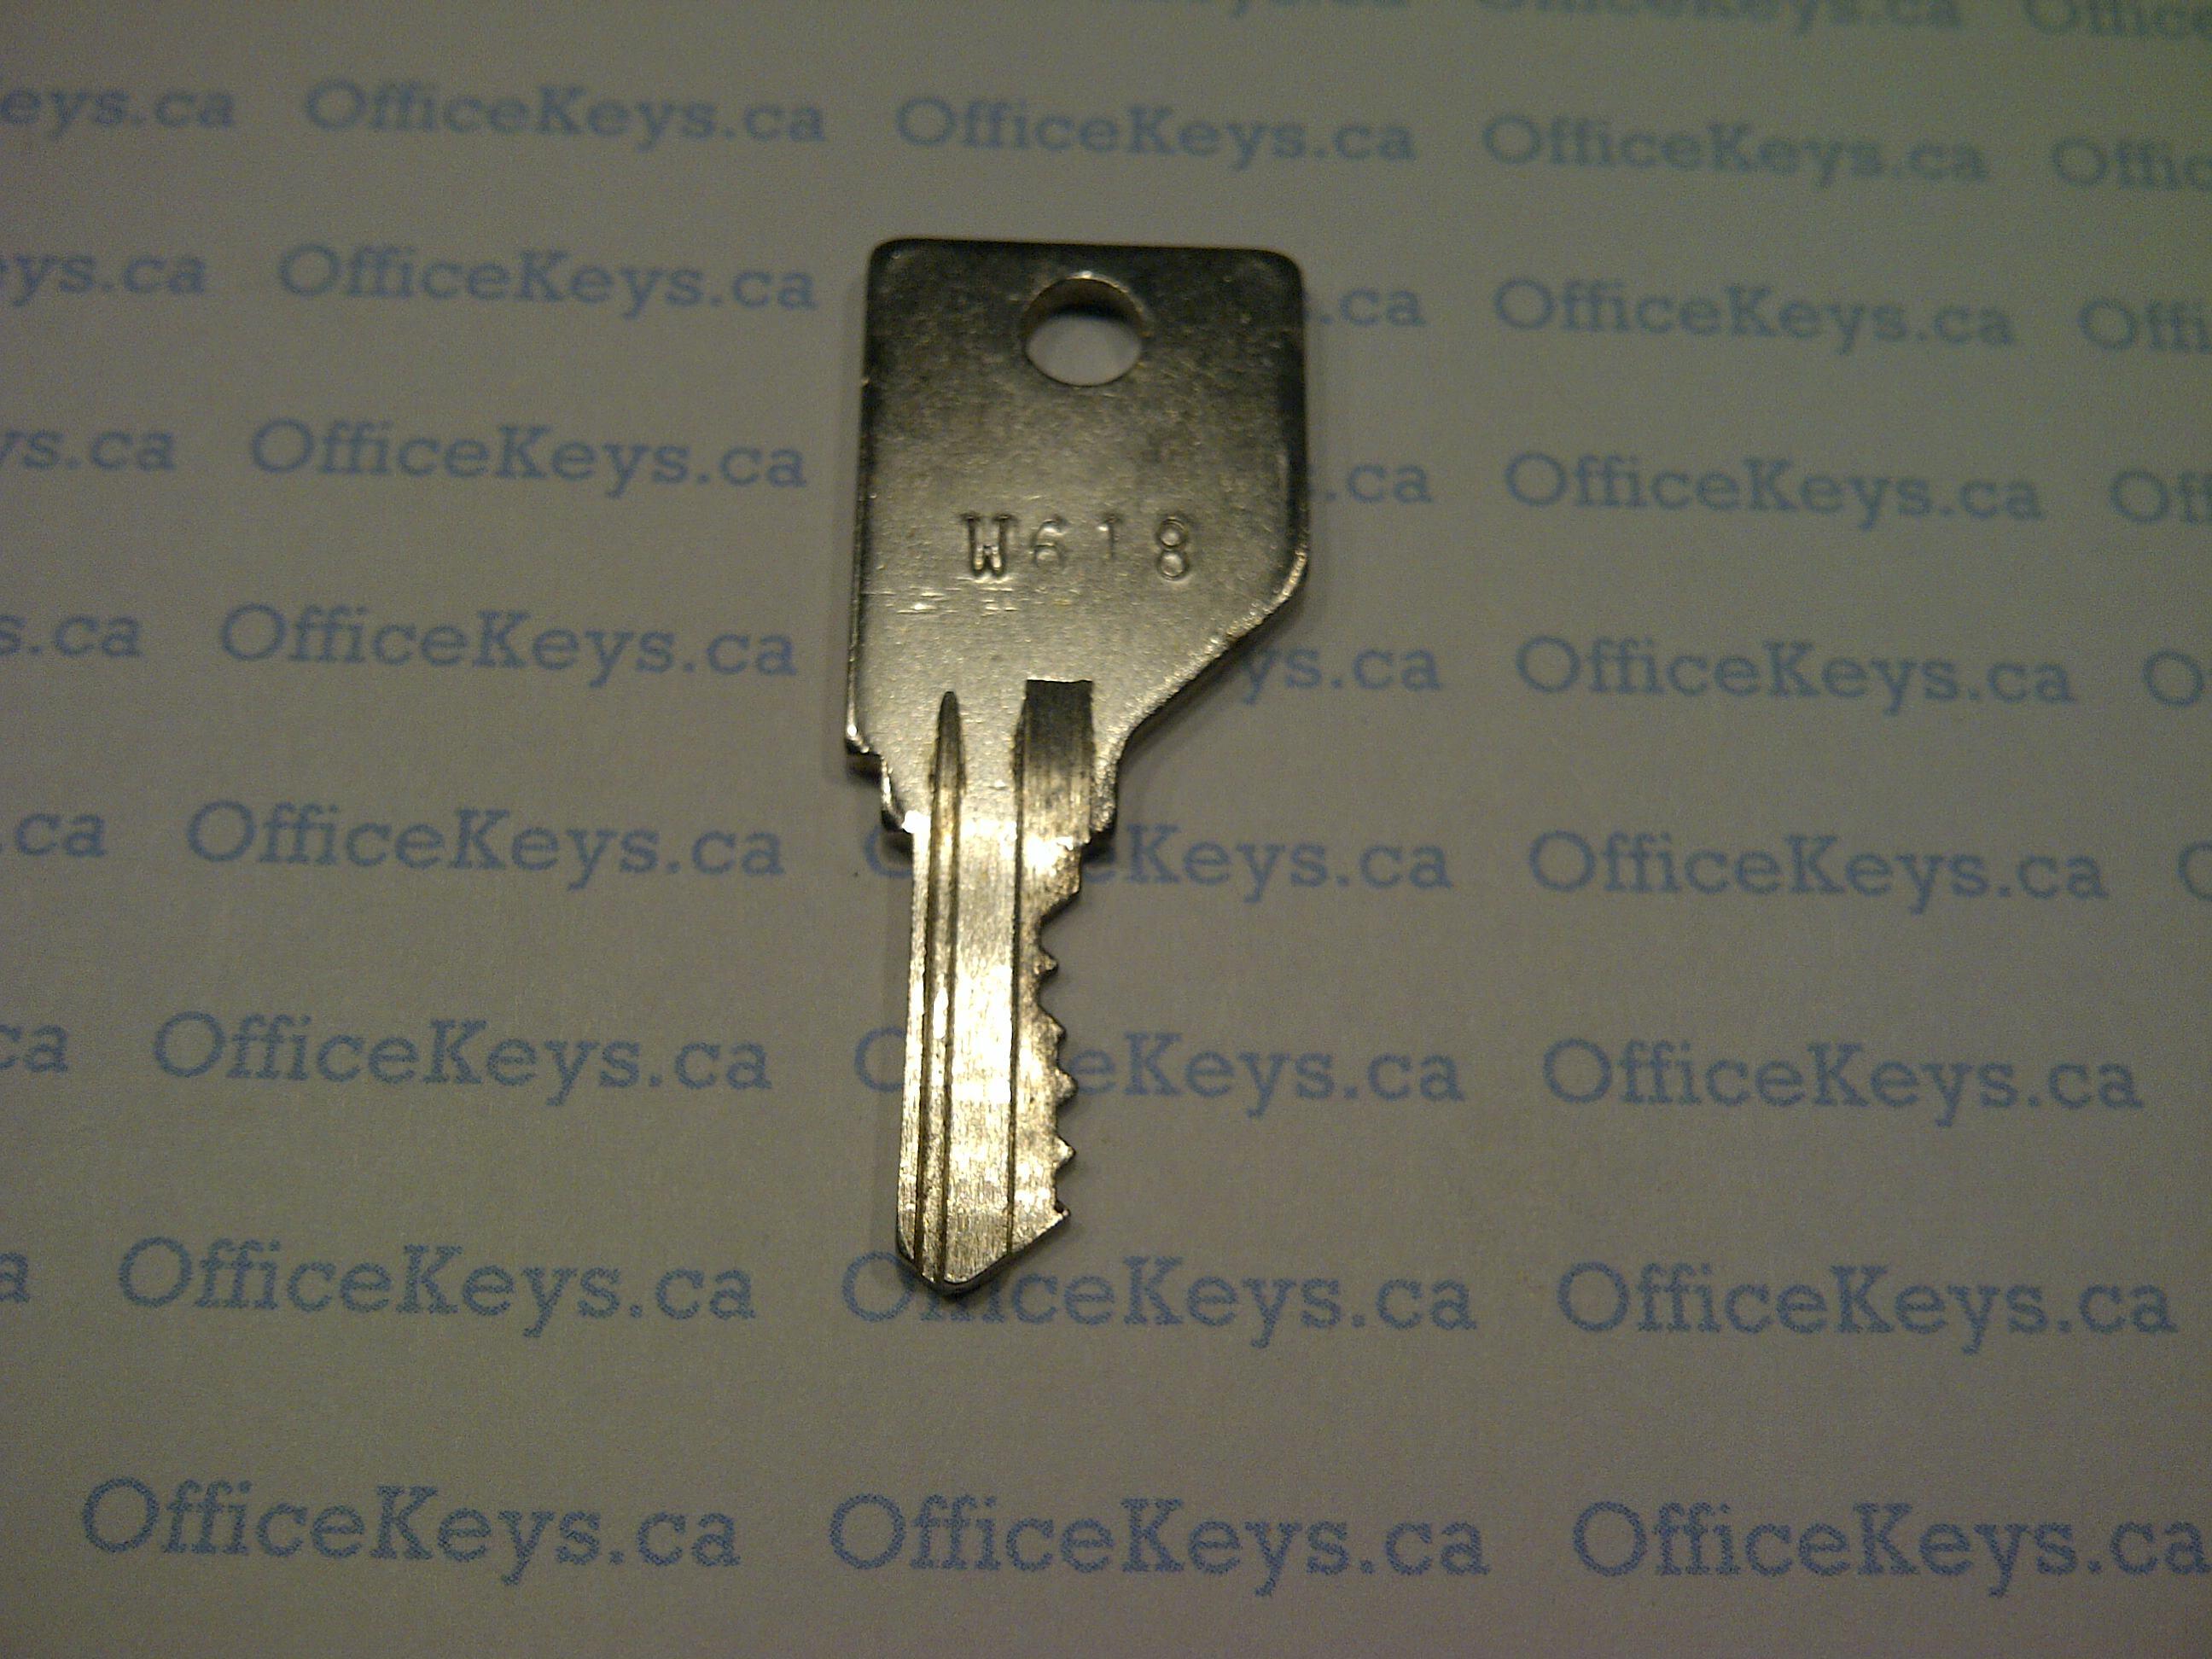 Global W001 W630 Series Code Keys Officekeys Caofficekeys Ca